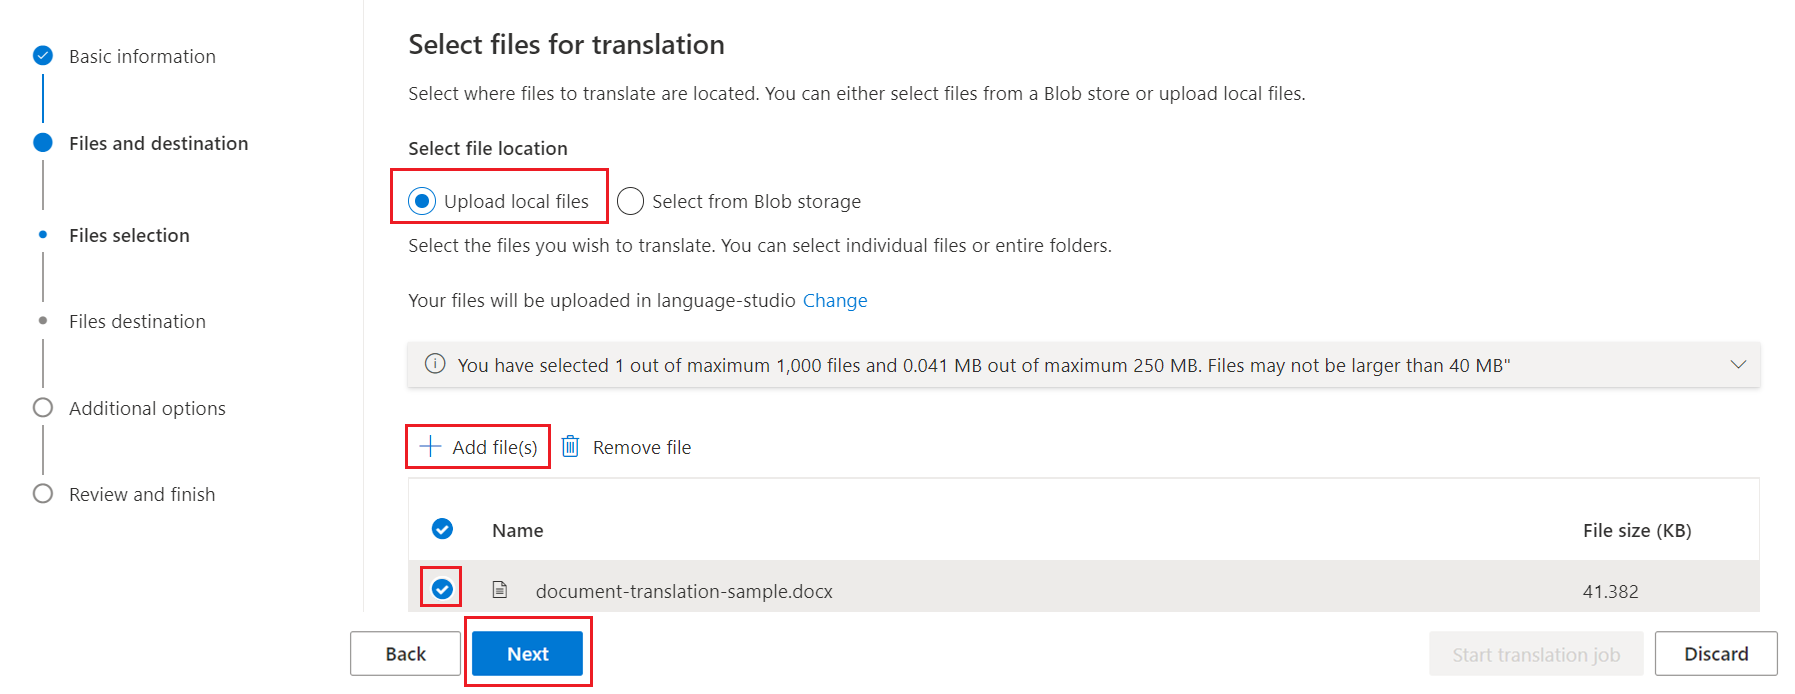 選取檔案進行翻譯的頁面的螢幕擷取畫面。